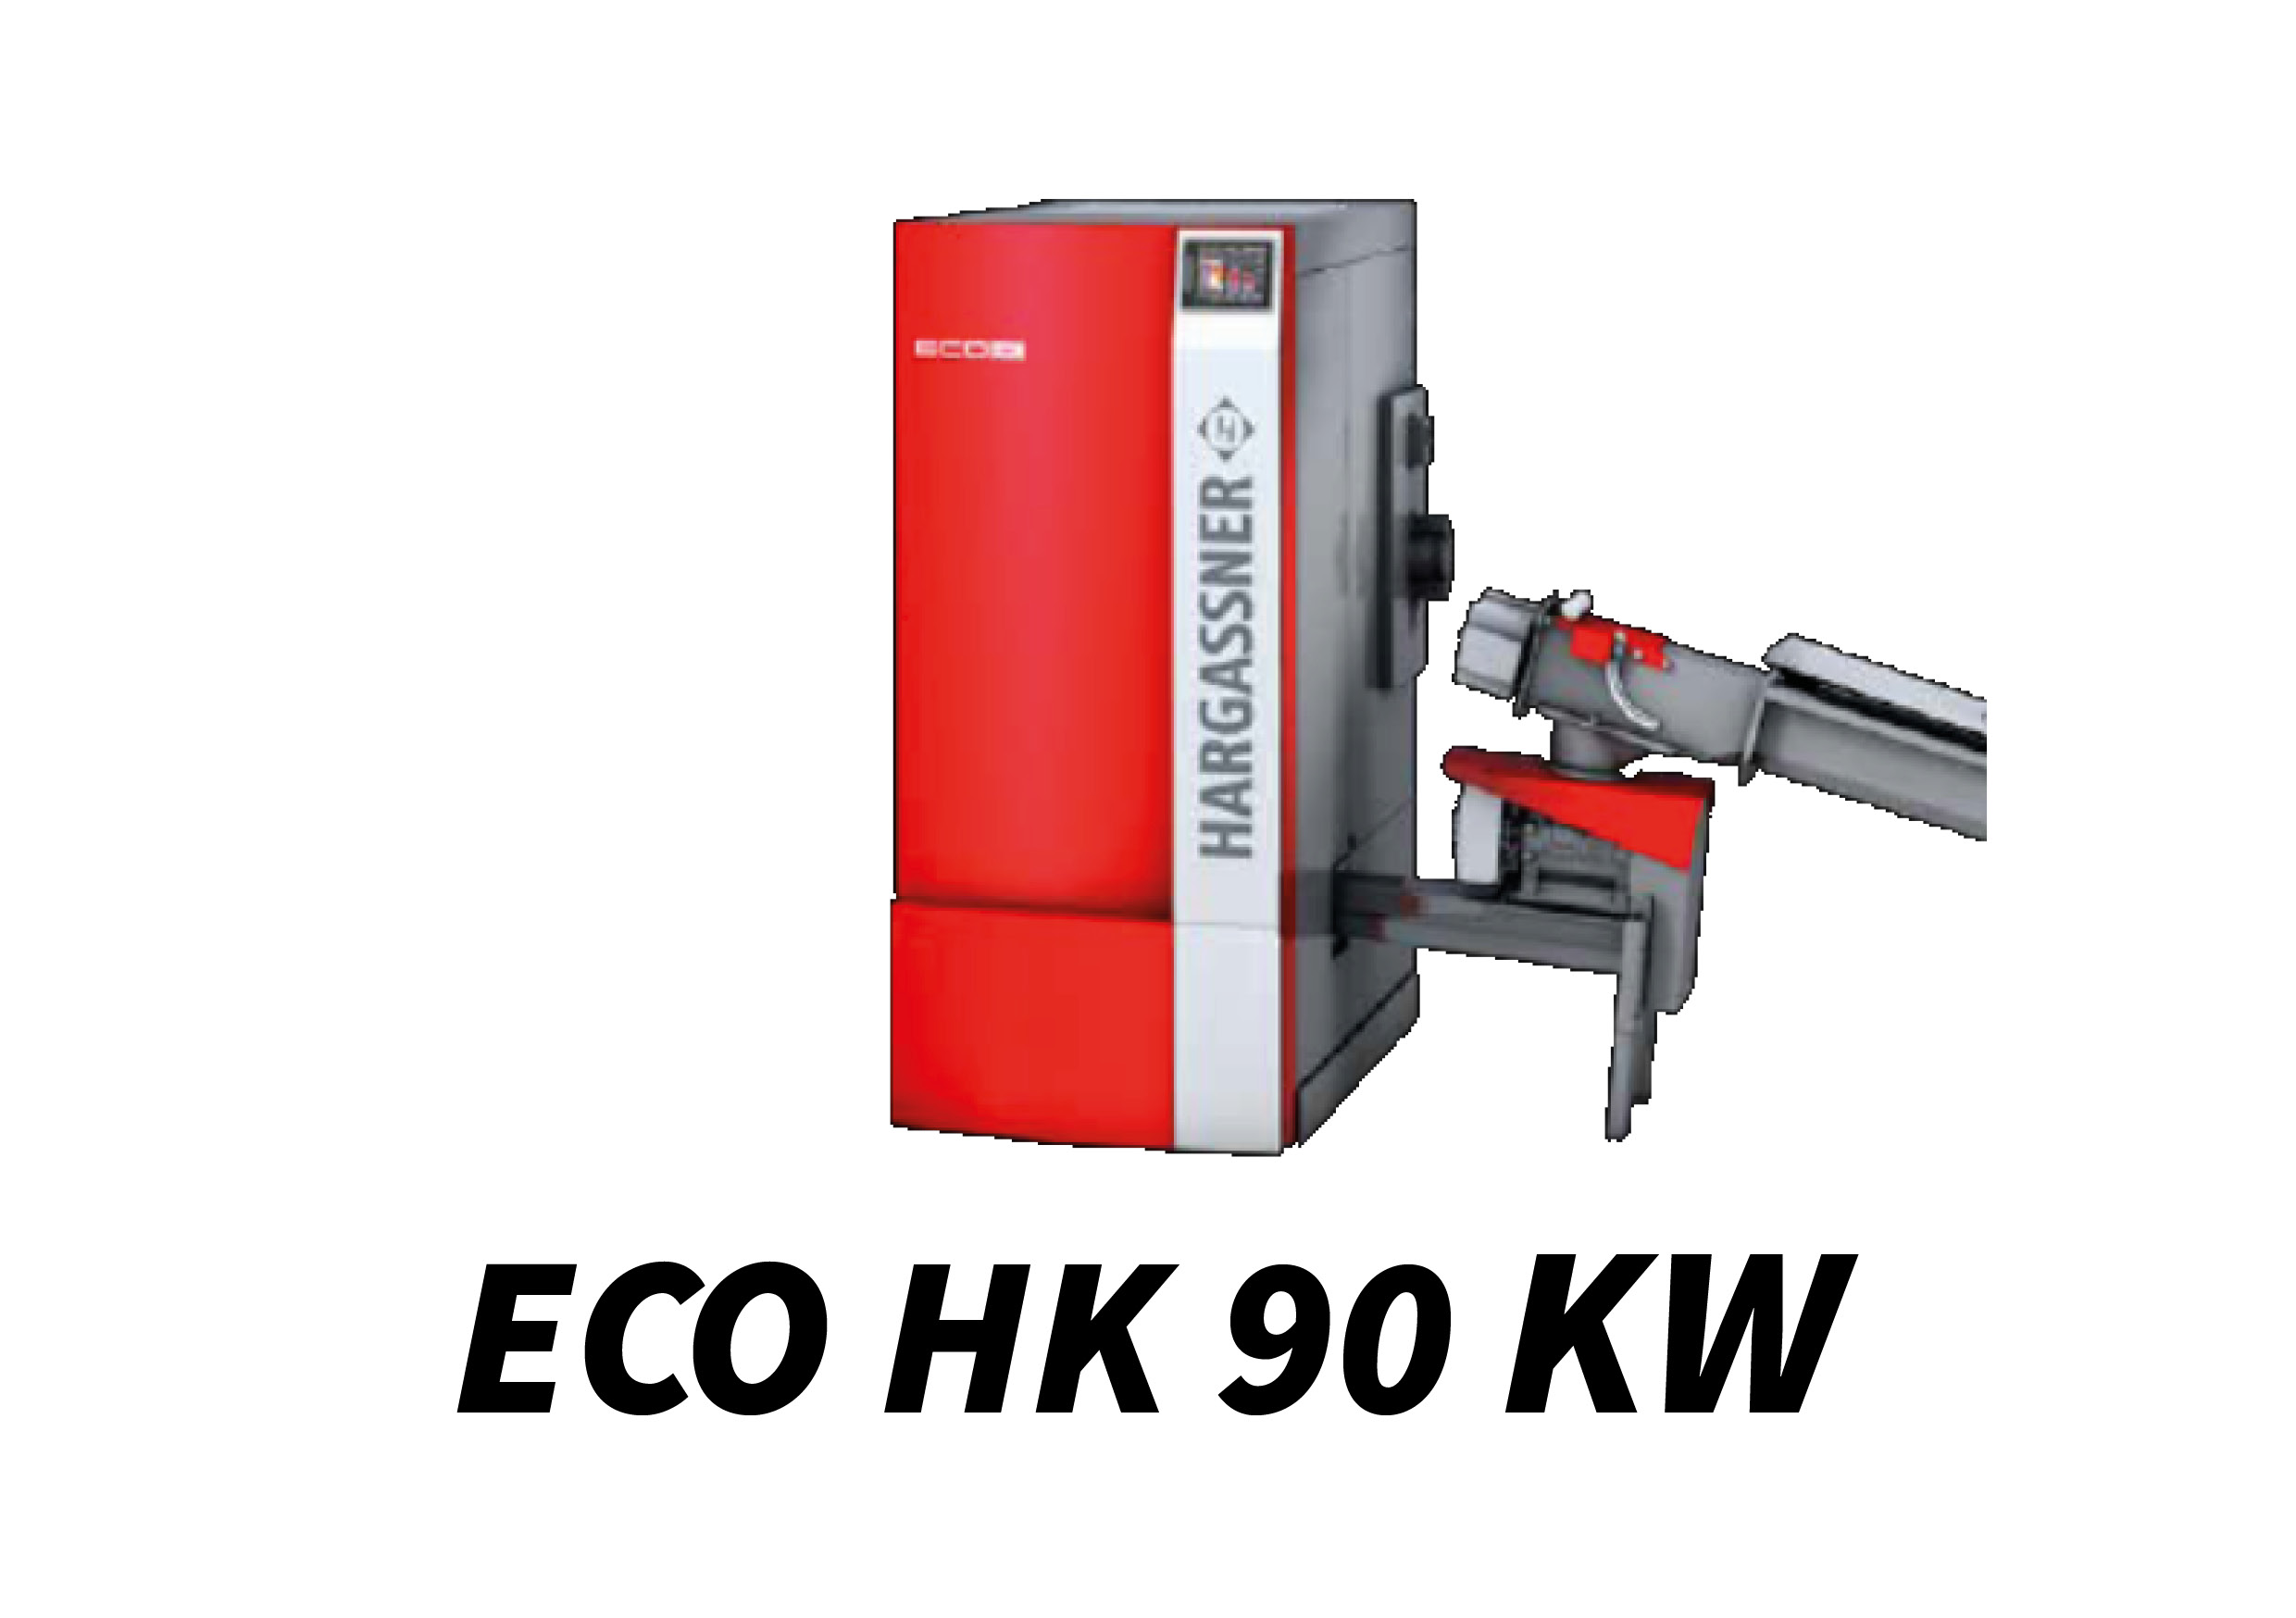 ECO HK 90 kW